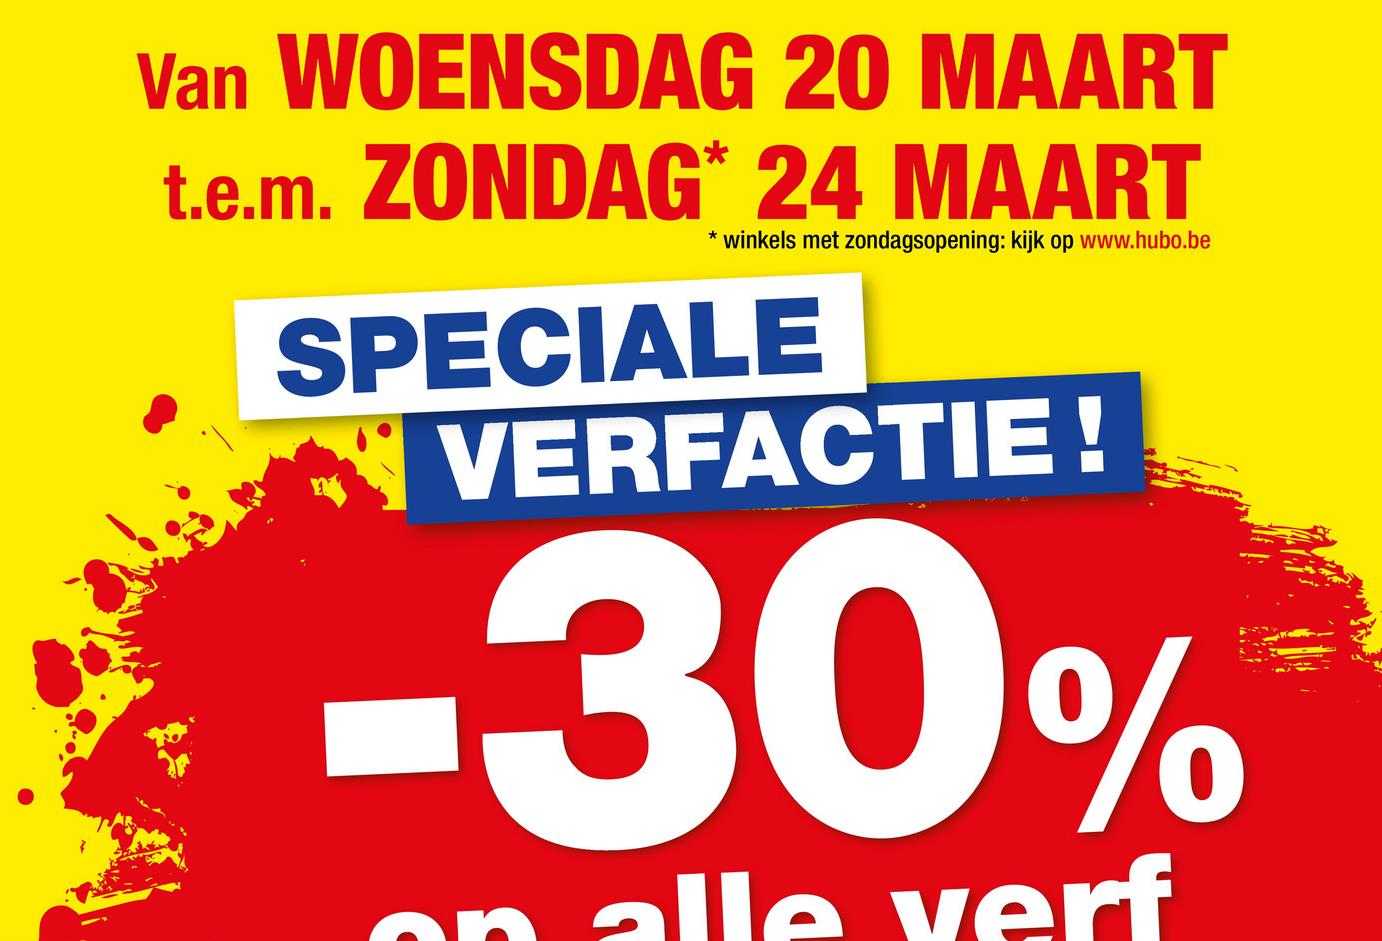 Van WOENSDAG 20 MAART
t.e.m. ZONDAG* 24 MAART
* winkels met zondagsopening: kijk op www.hubo.be
SPECIALE
VERFACTIE!
-30%
on alle verf